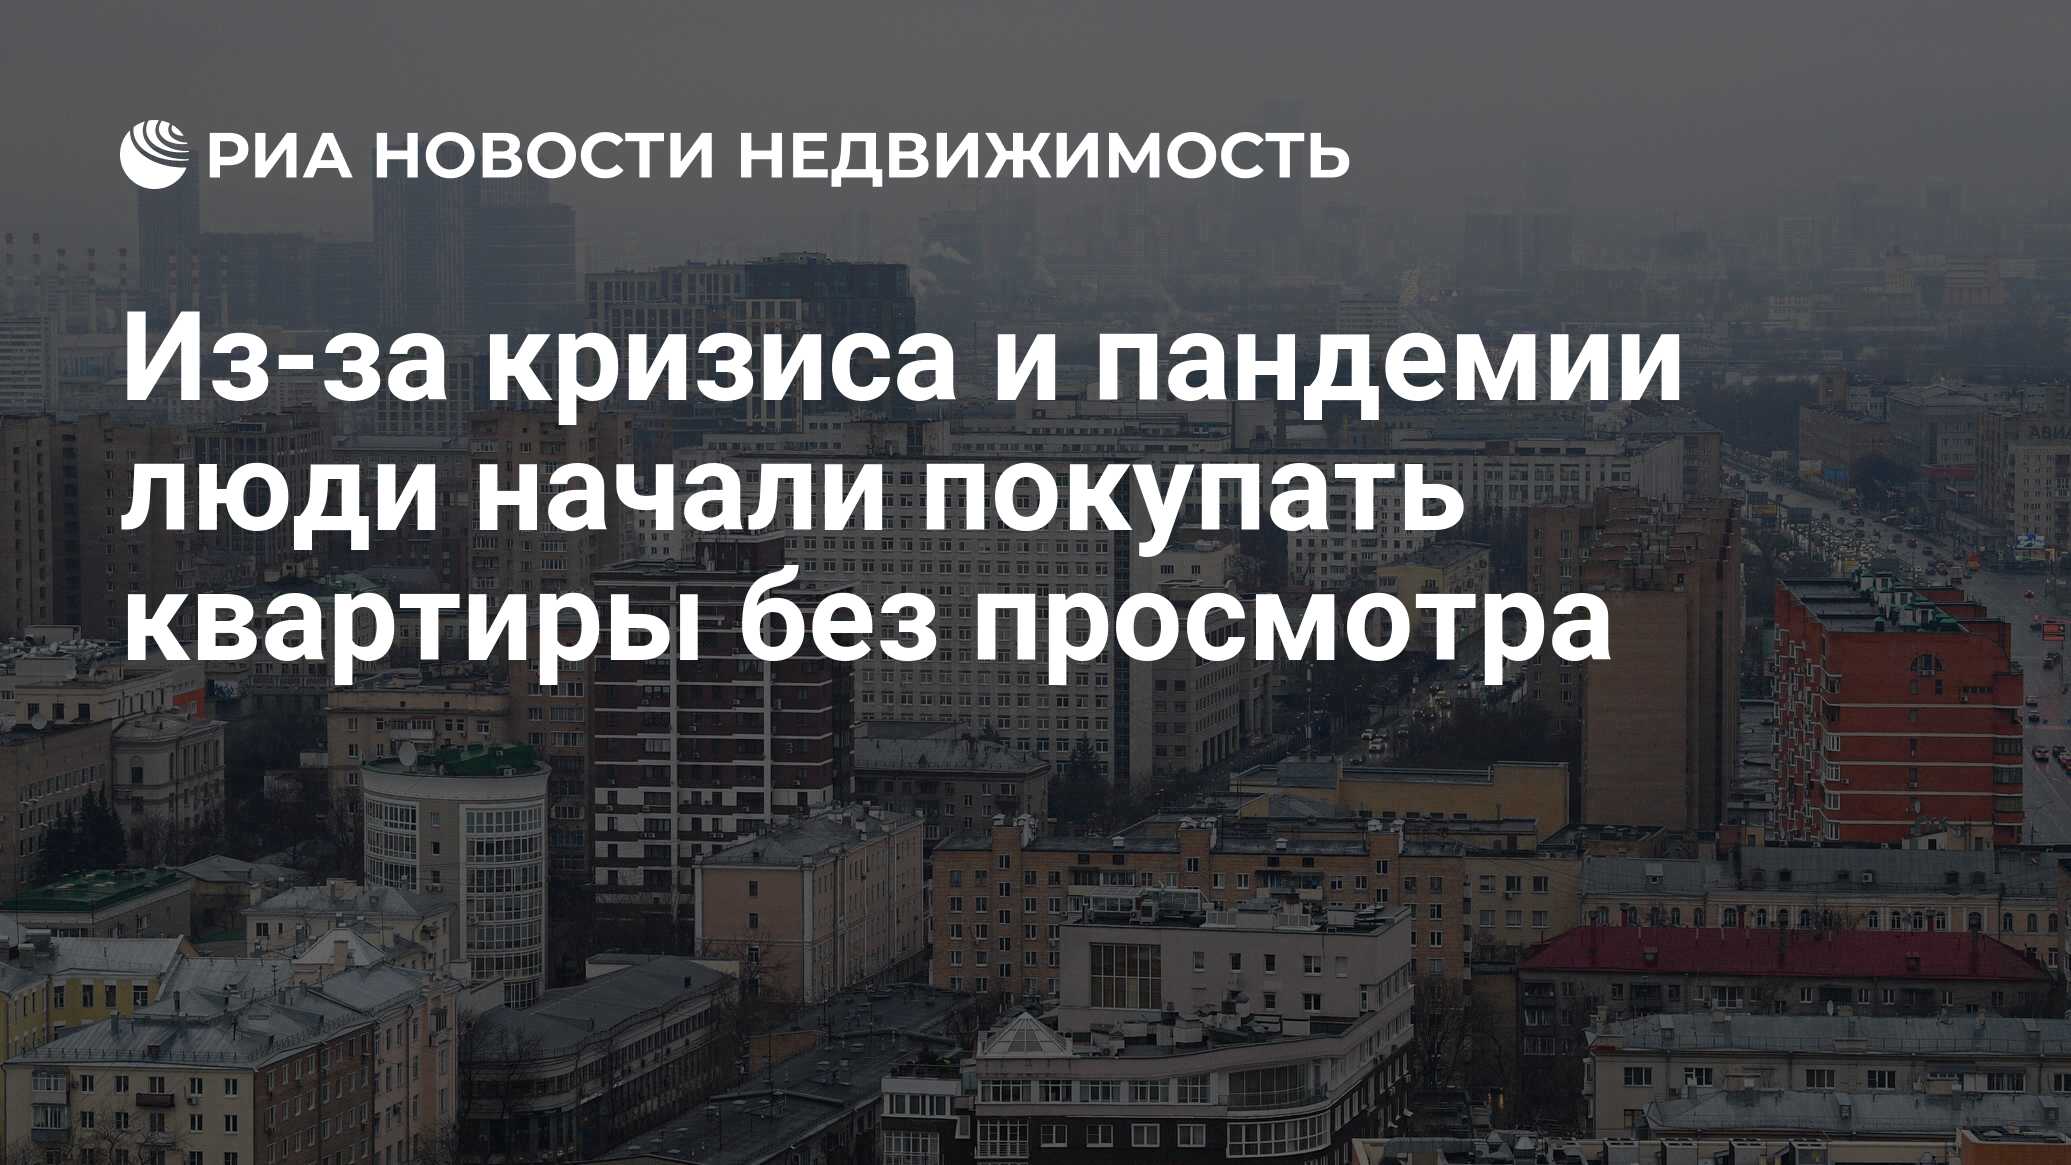 Дата владения недвижимостью. Продажи вторичного жилья в Москве упали за девять месяцев на 21%.